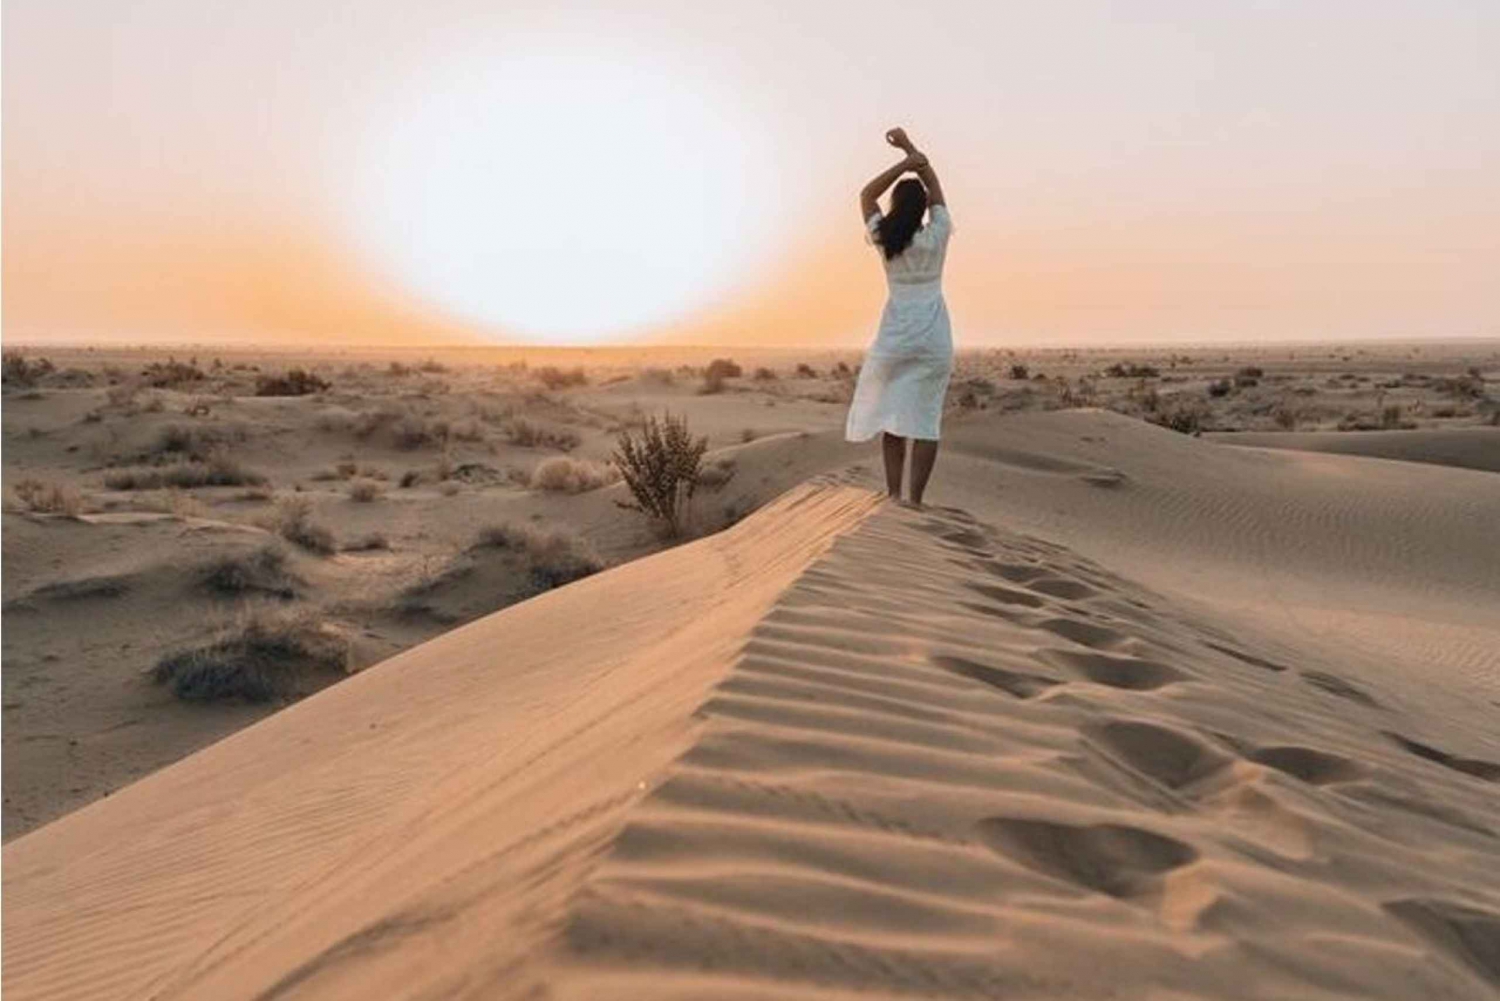 Wunderbare Kamelsafari mit der Rumi Karawane in der Wüste Thar